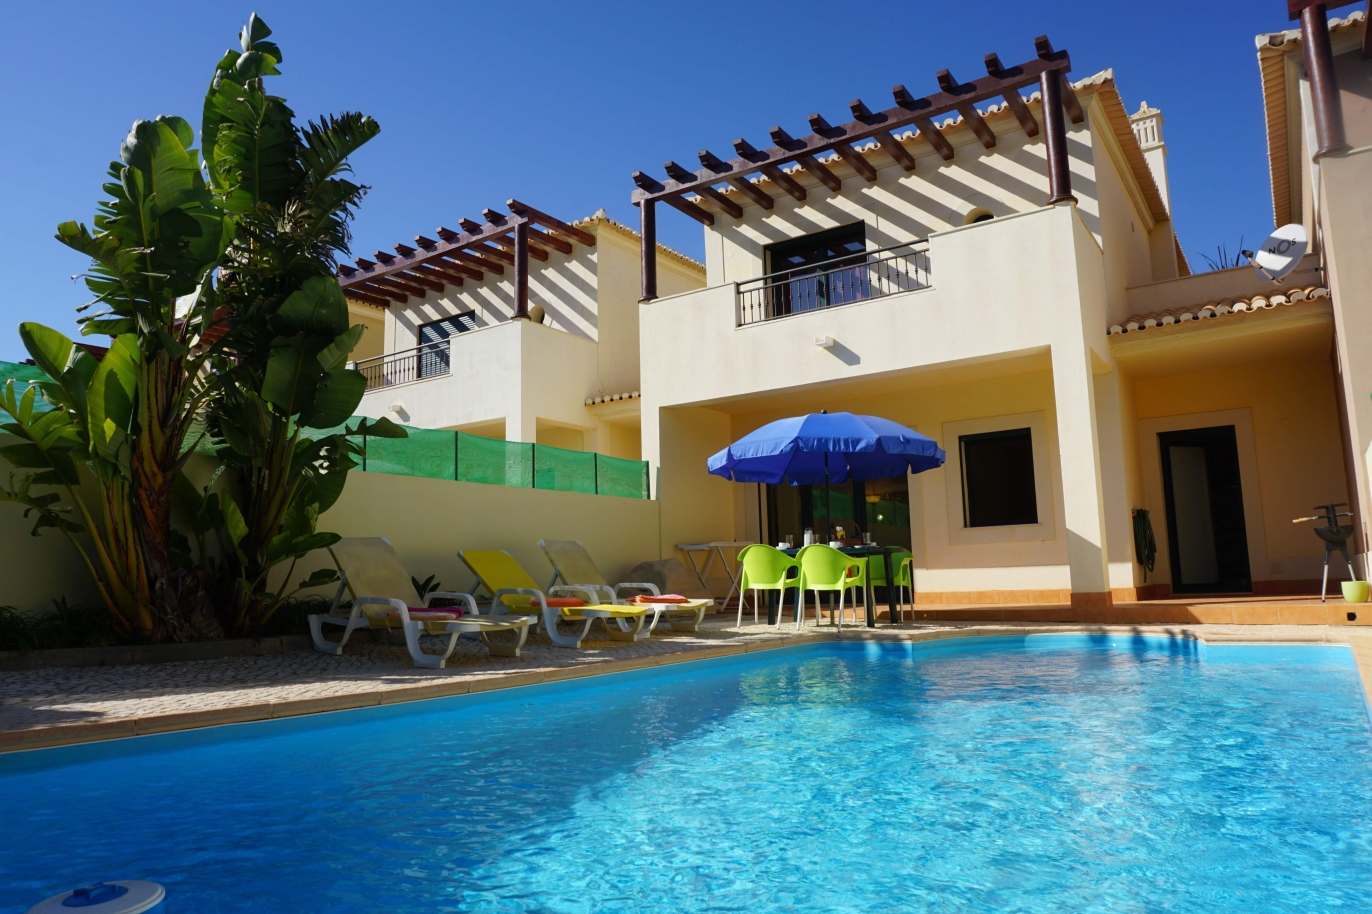 Sale of villa with pool in Budens, Vila do Bispo, Algarve, Portugal_118806